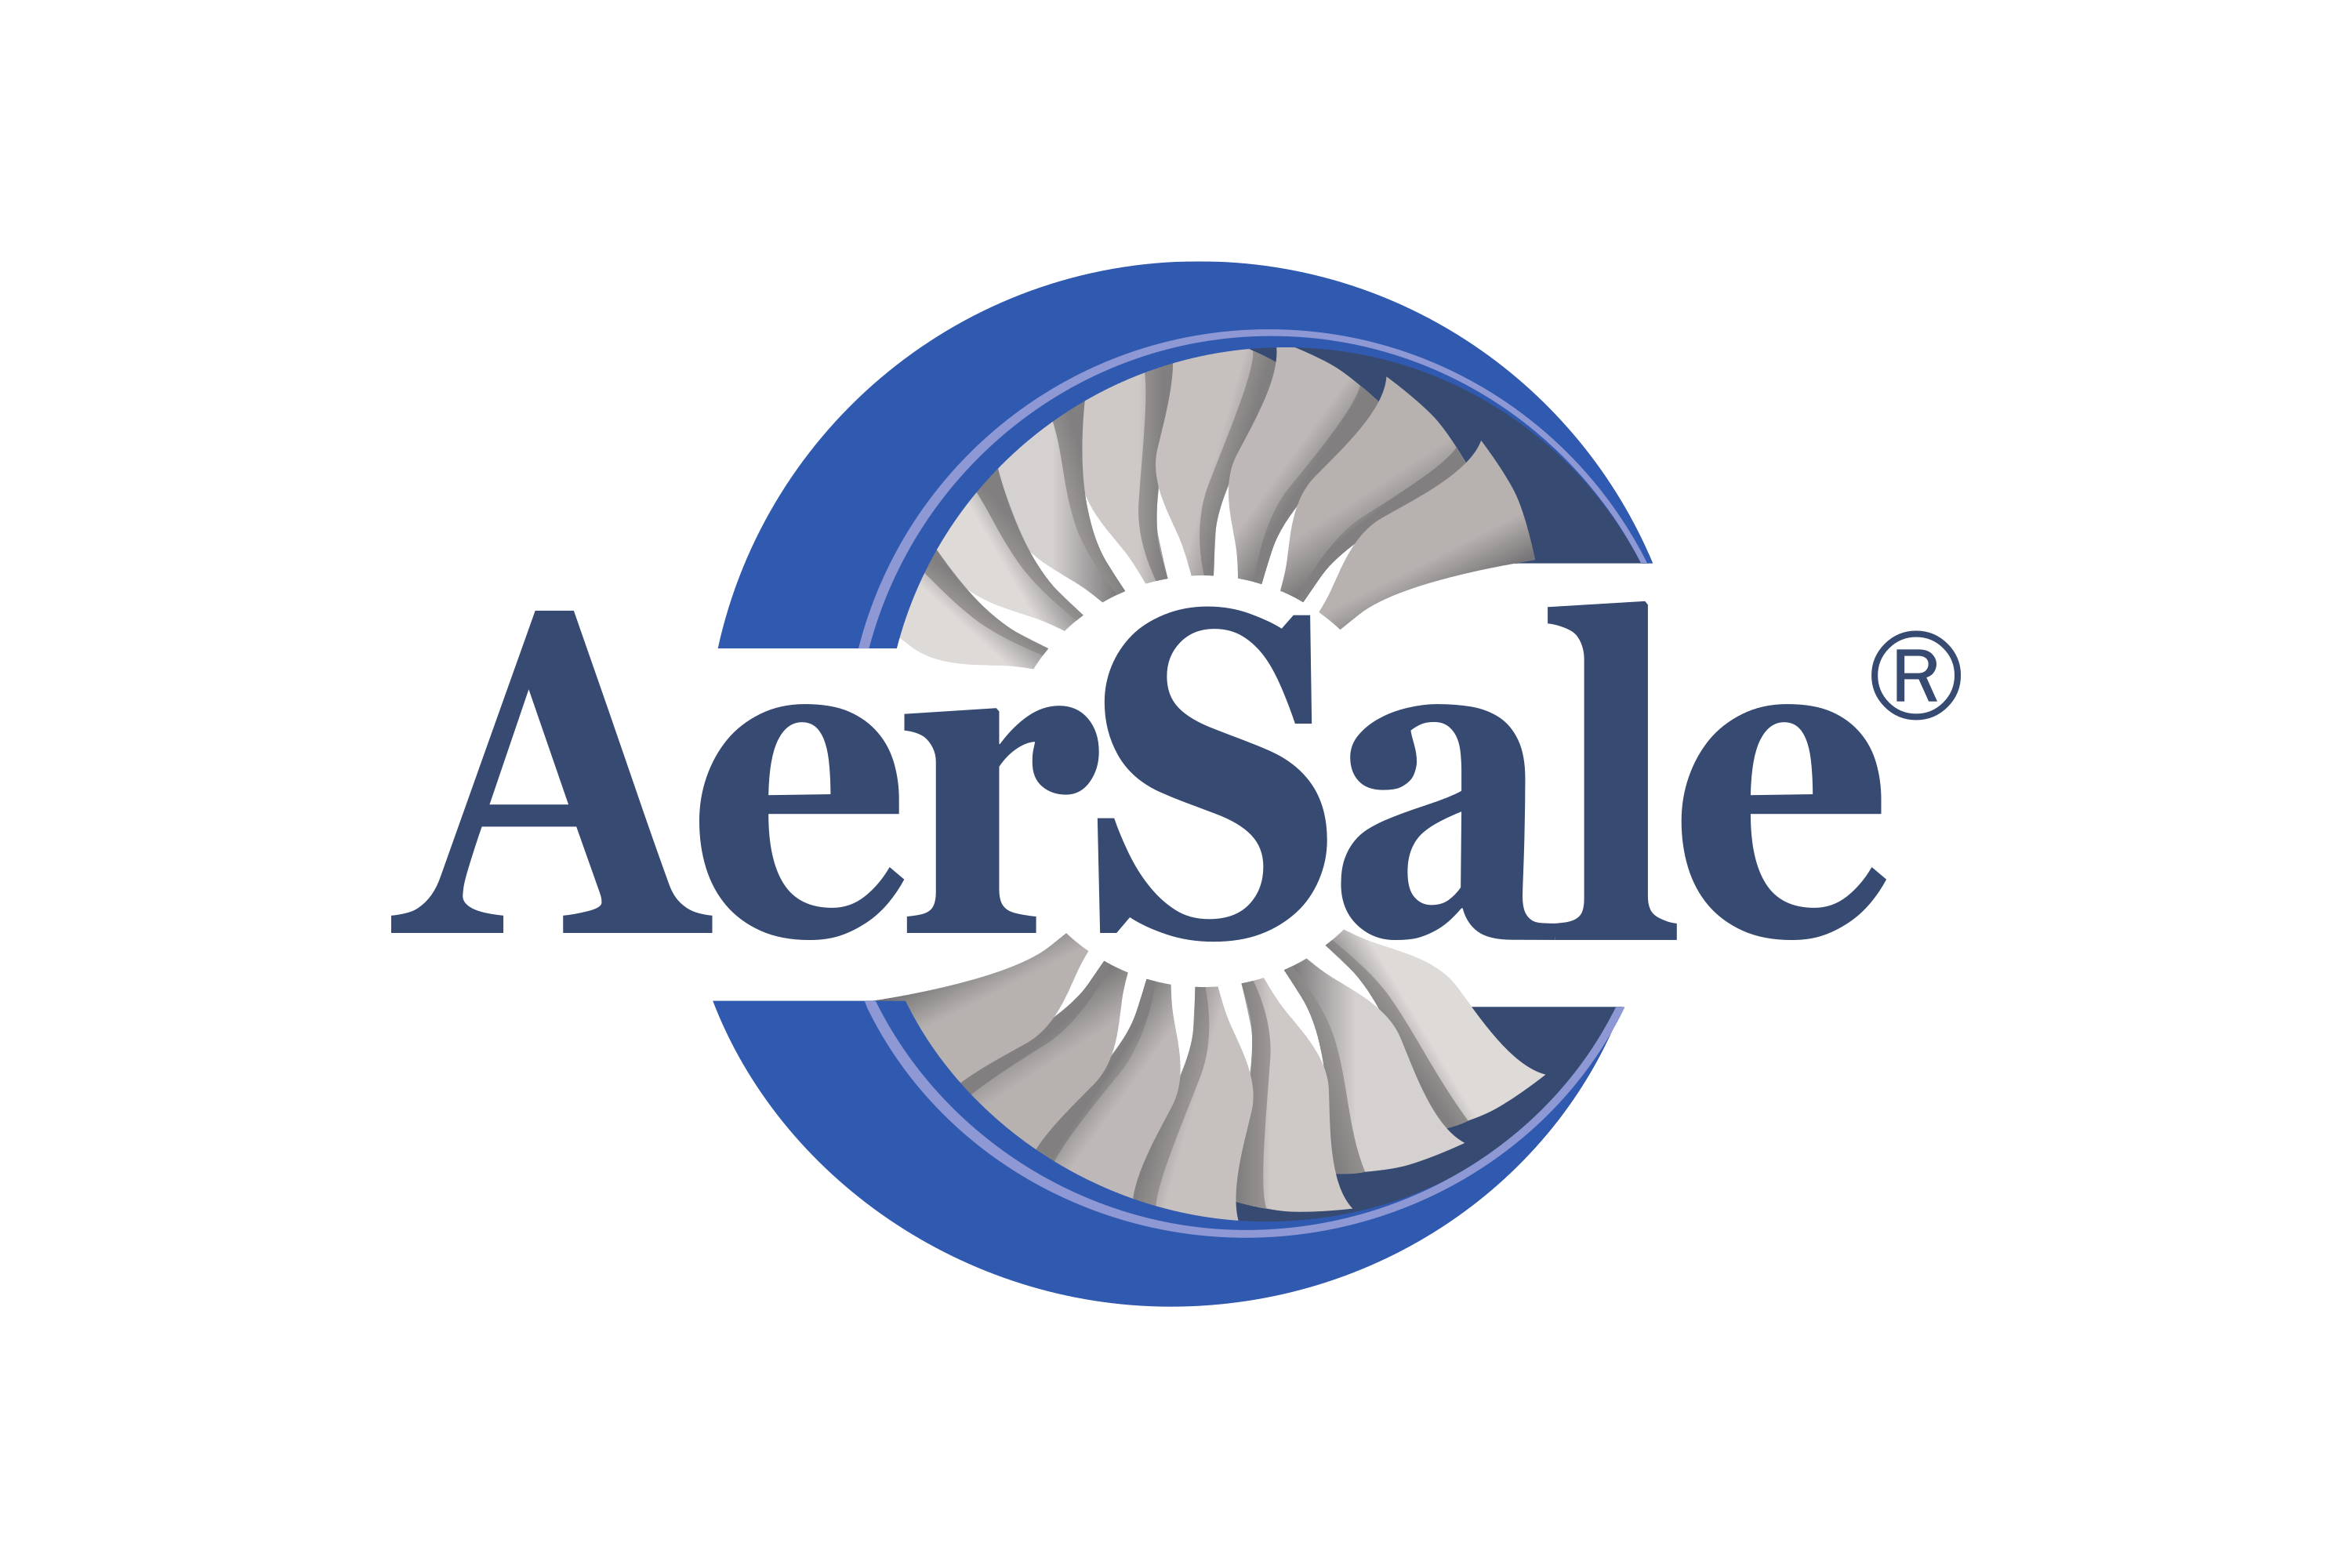 AerSale Logo